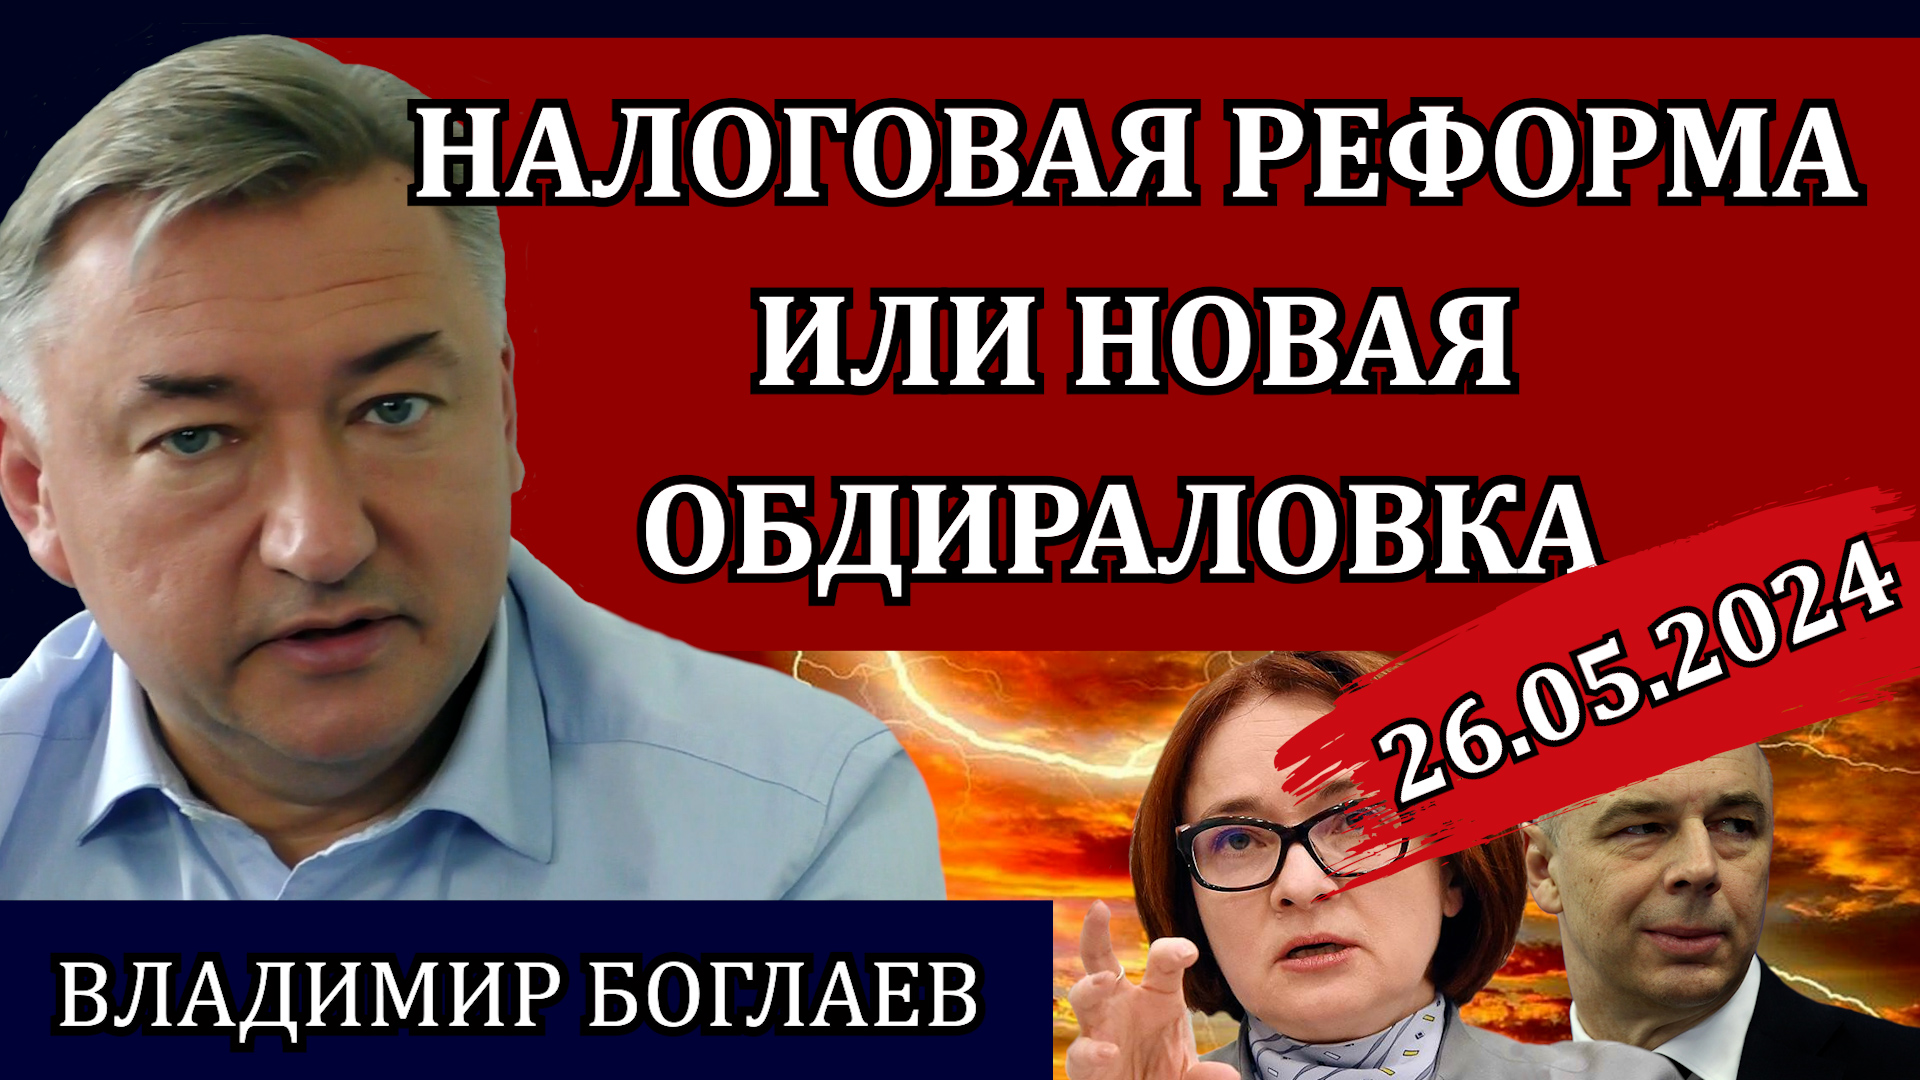 Сводки (26.05.24): для чего нужна реформа, Набиуллина и инфляция, народный станок / Владимир Боглаев